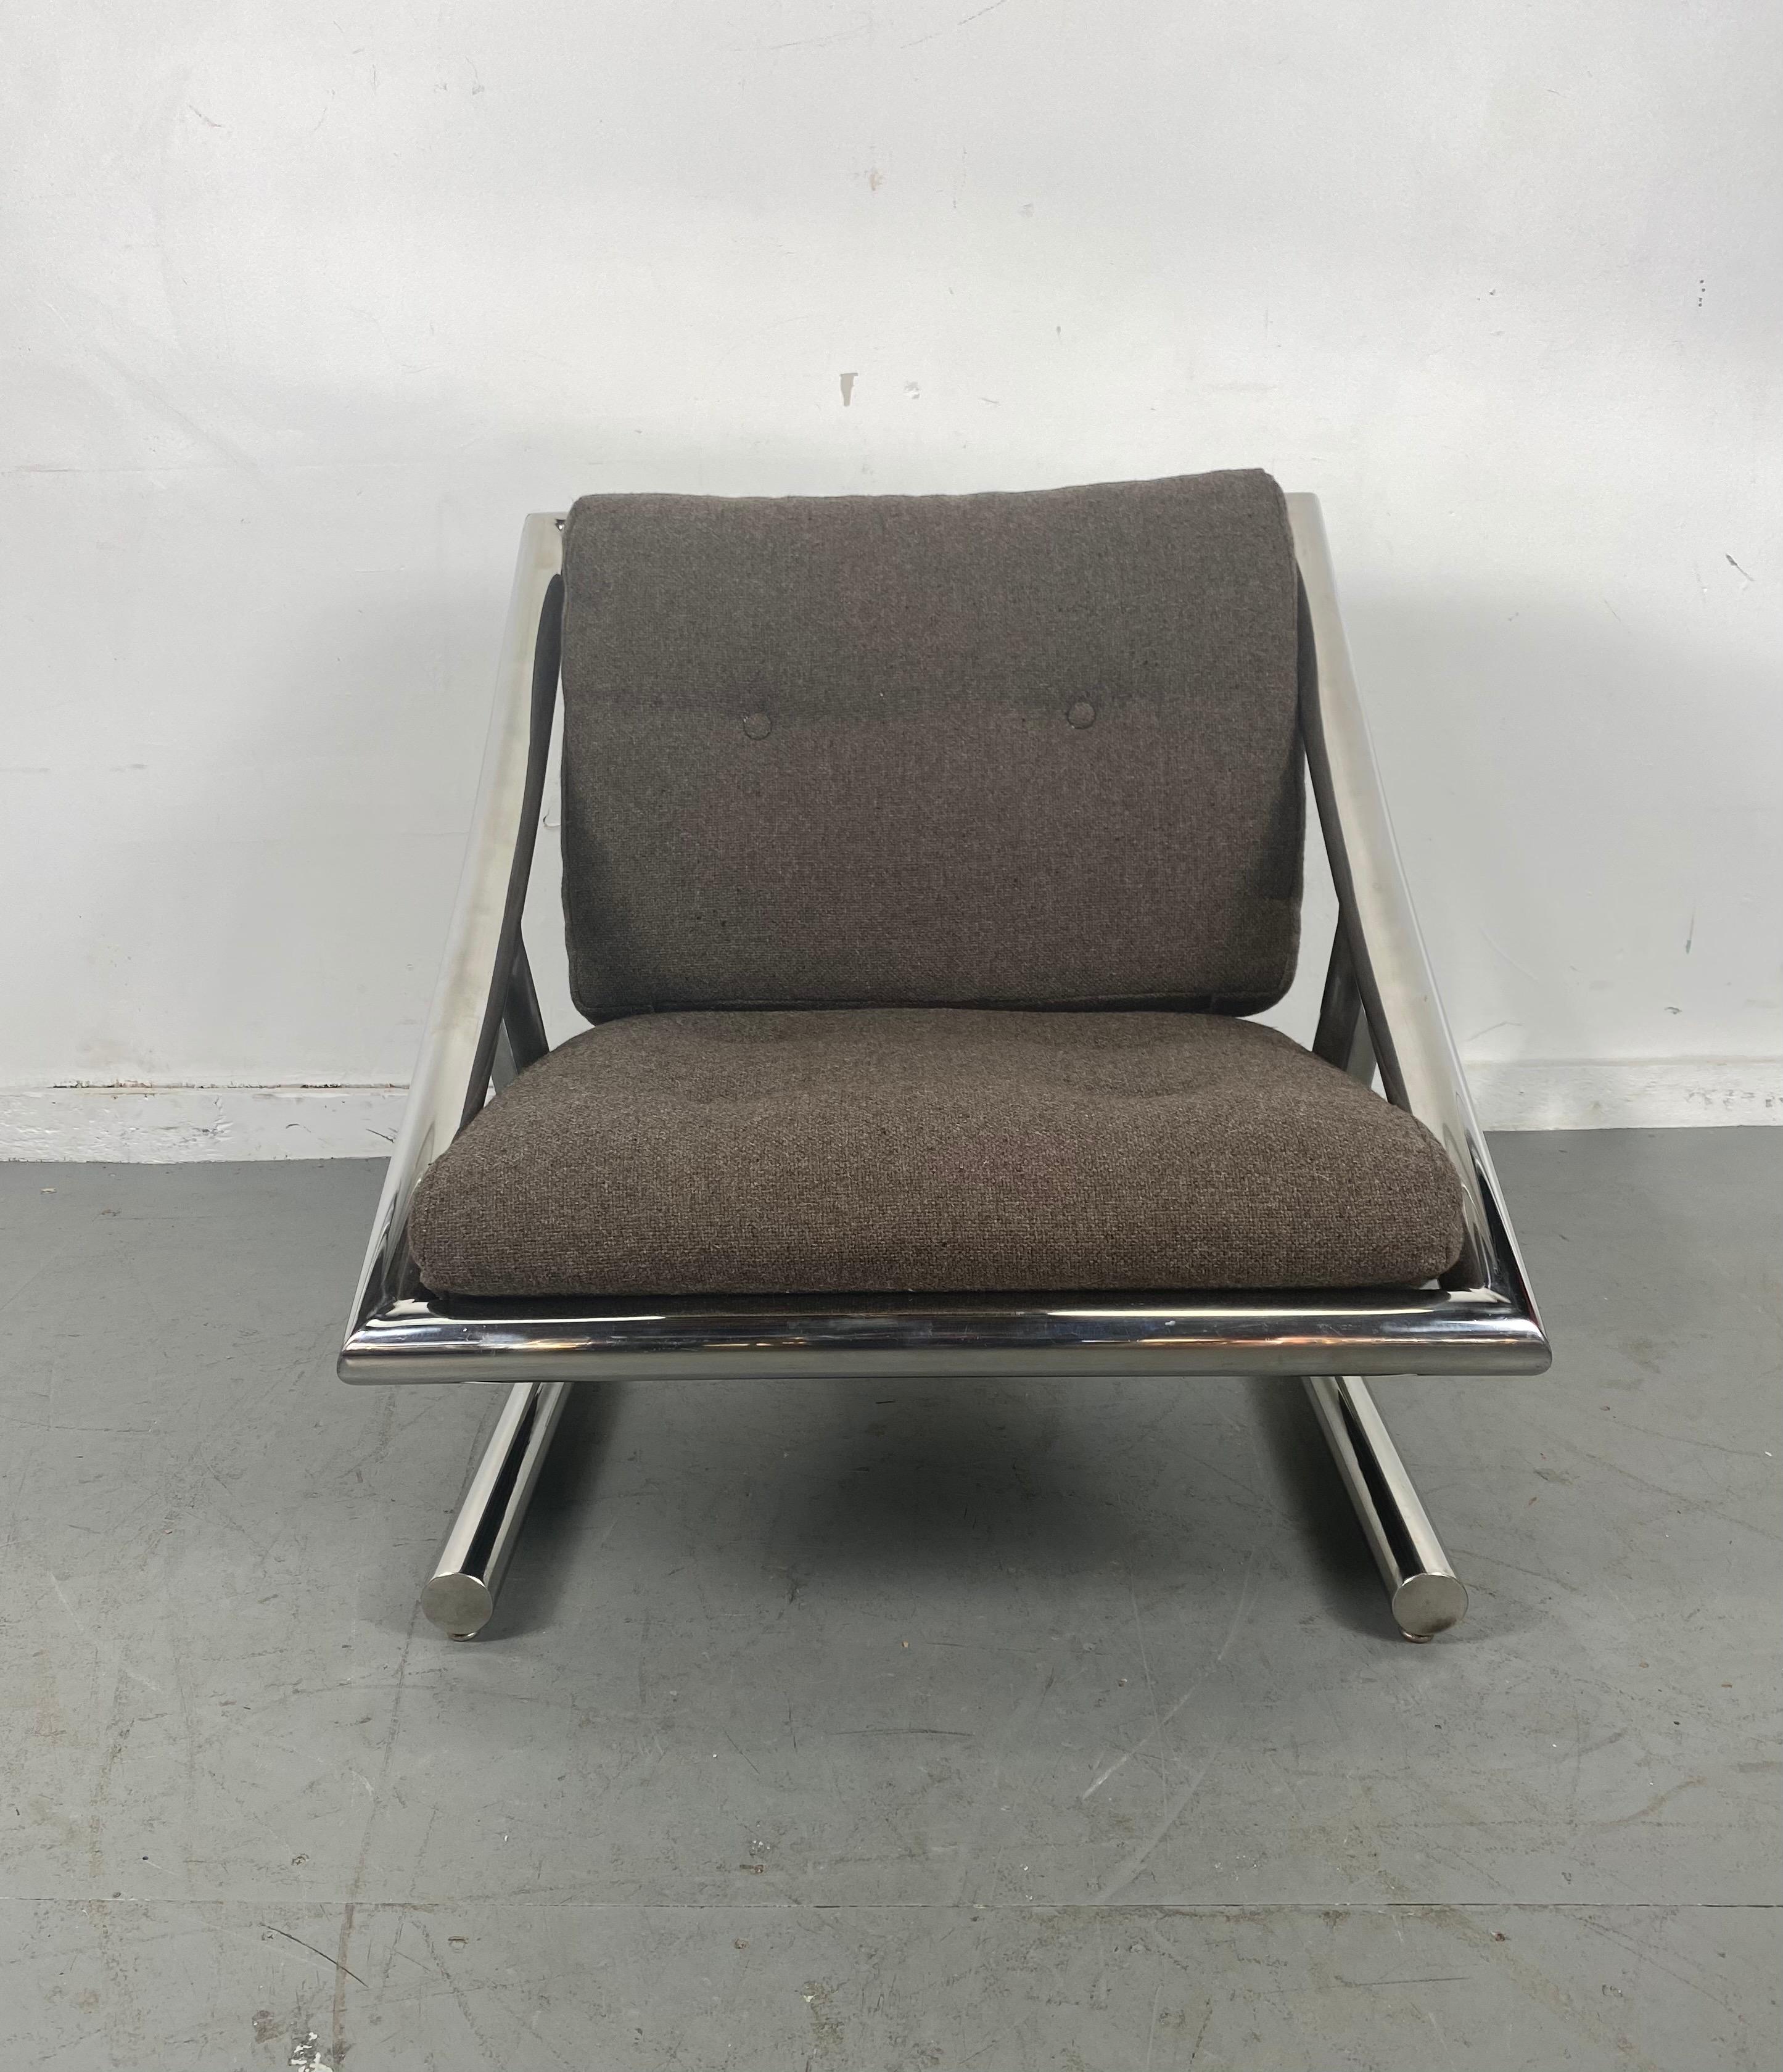 Seltener Lounge-Sessel aus verchromtem Stahl der Space Age-Moderne von Plato Ginello, Italien. Ein wahrhaft erstaunliches skulpturales, architektonisches Design. Hervorragende Qualität und Konstruktion, behält original heidebraune Wolle Knopf